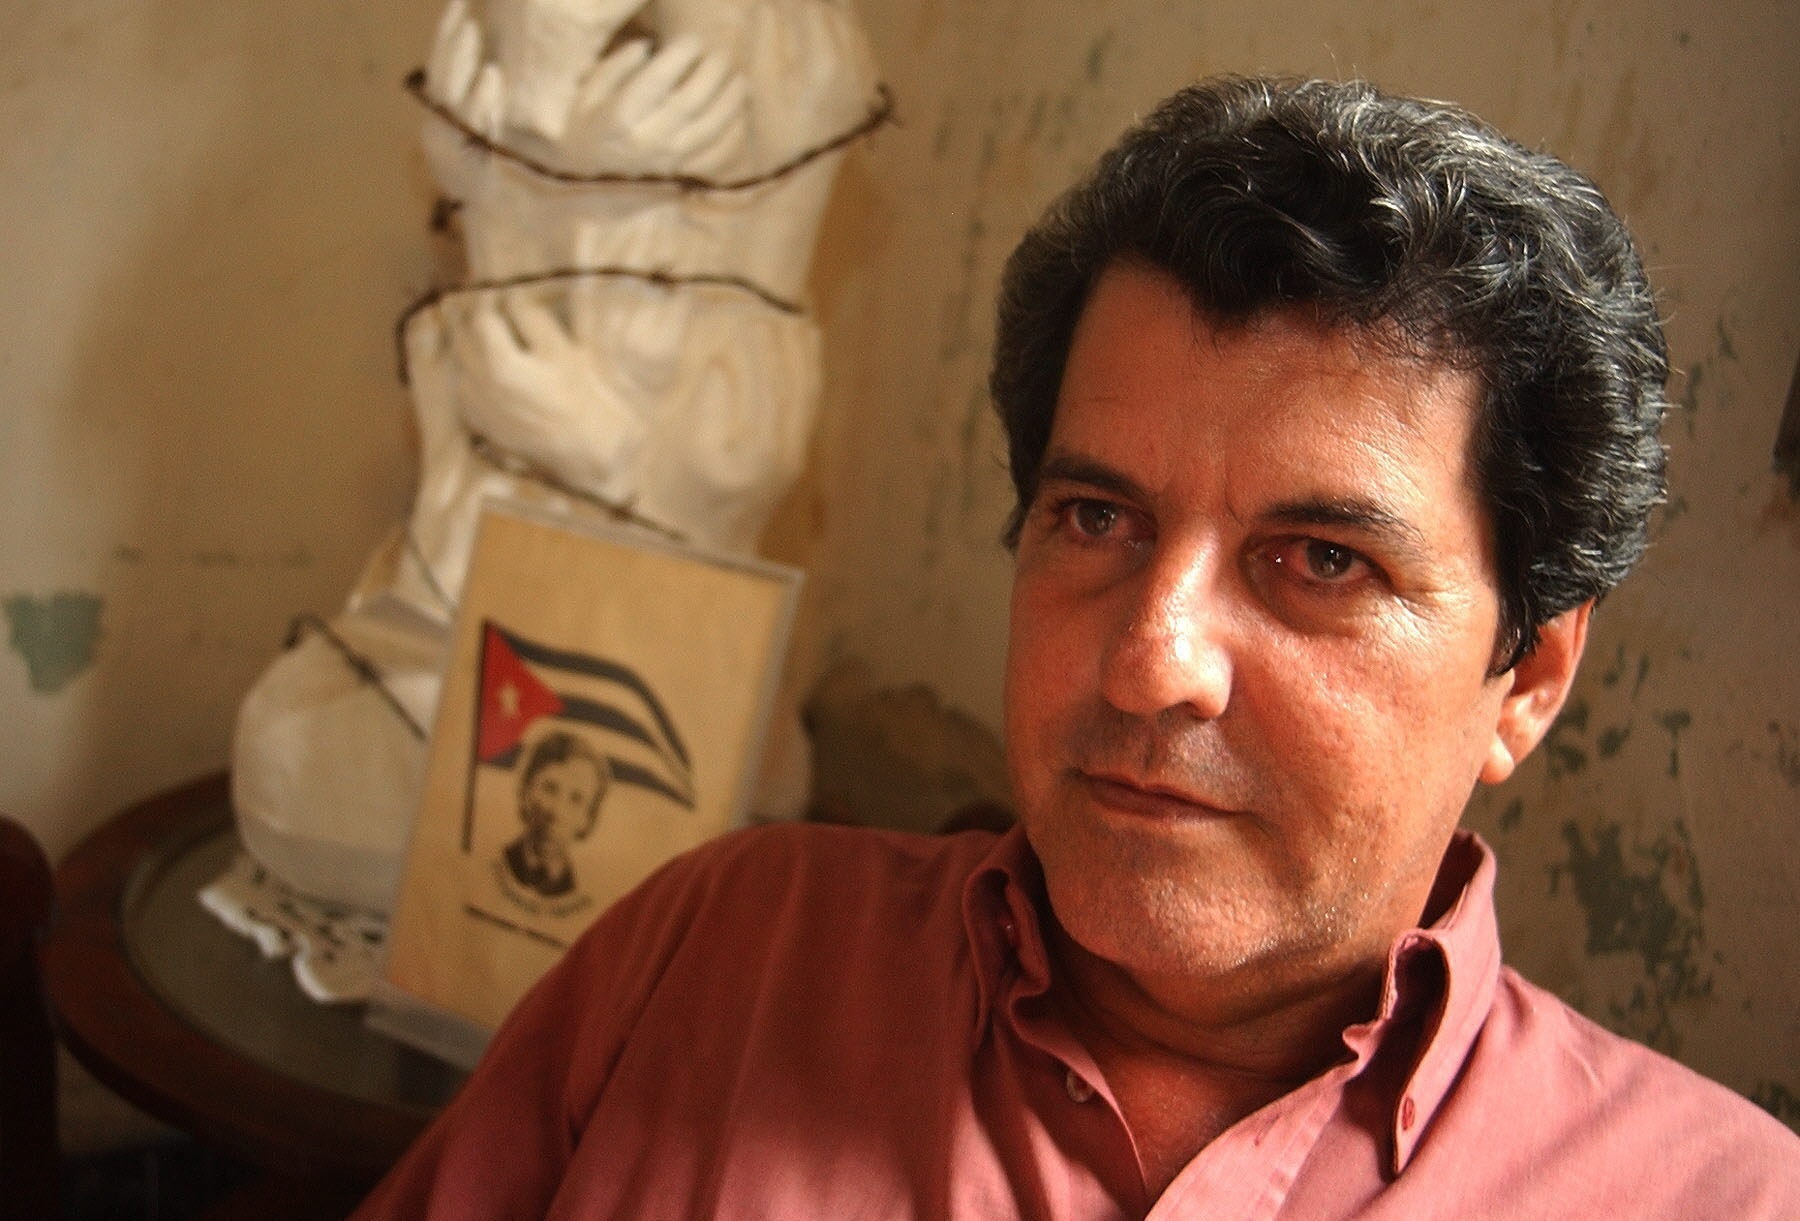 En al imagen, el fallecido opositor cubano Oswaldo Payá (EFE/Alejandro Ernesto/Archivo)
